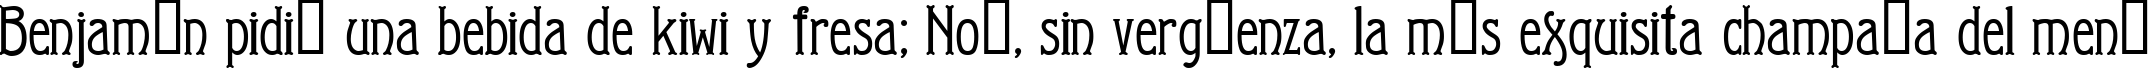 Пример написания шрифтом Arkhive текста на испанском